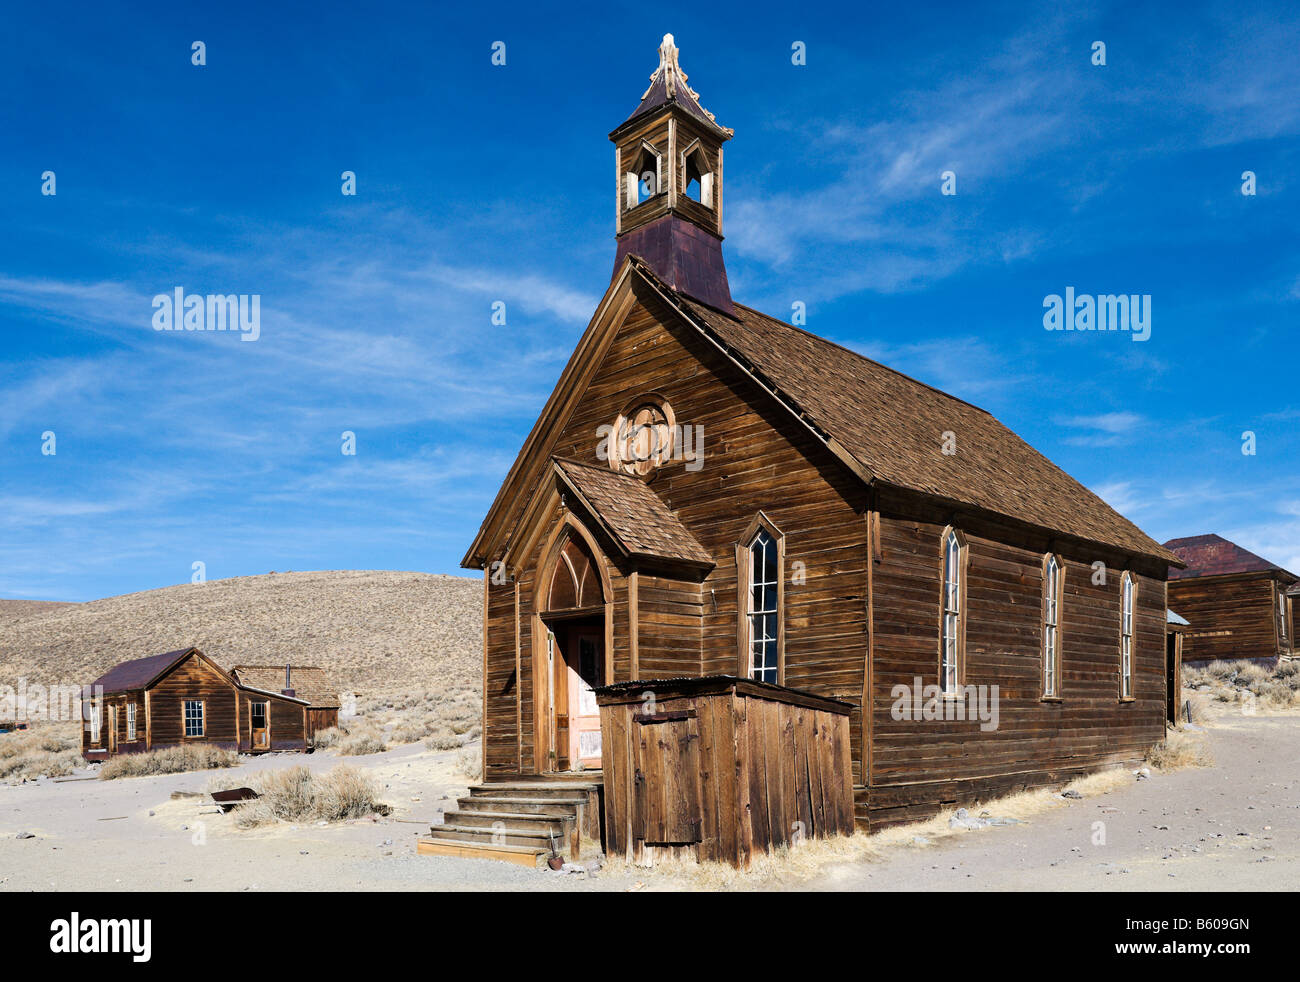 Evangelisch-methodistische Kirche, Green Street 19 Goldbergbau Geisterstadt Bodie in der Nähe von Bridgeport, Sierra Nevada Mountains, Kalifornien Stockfoto